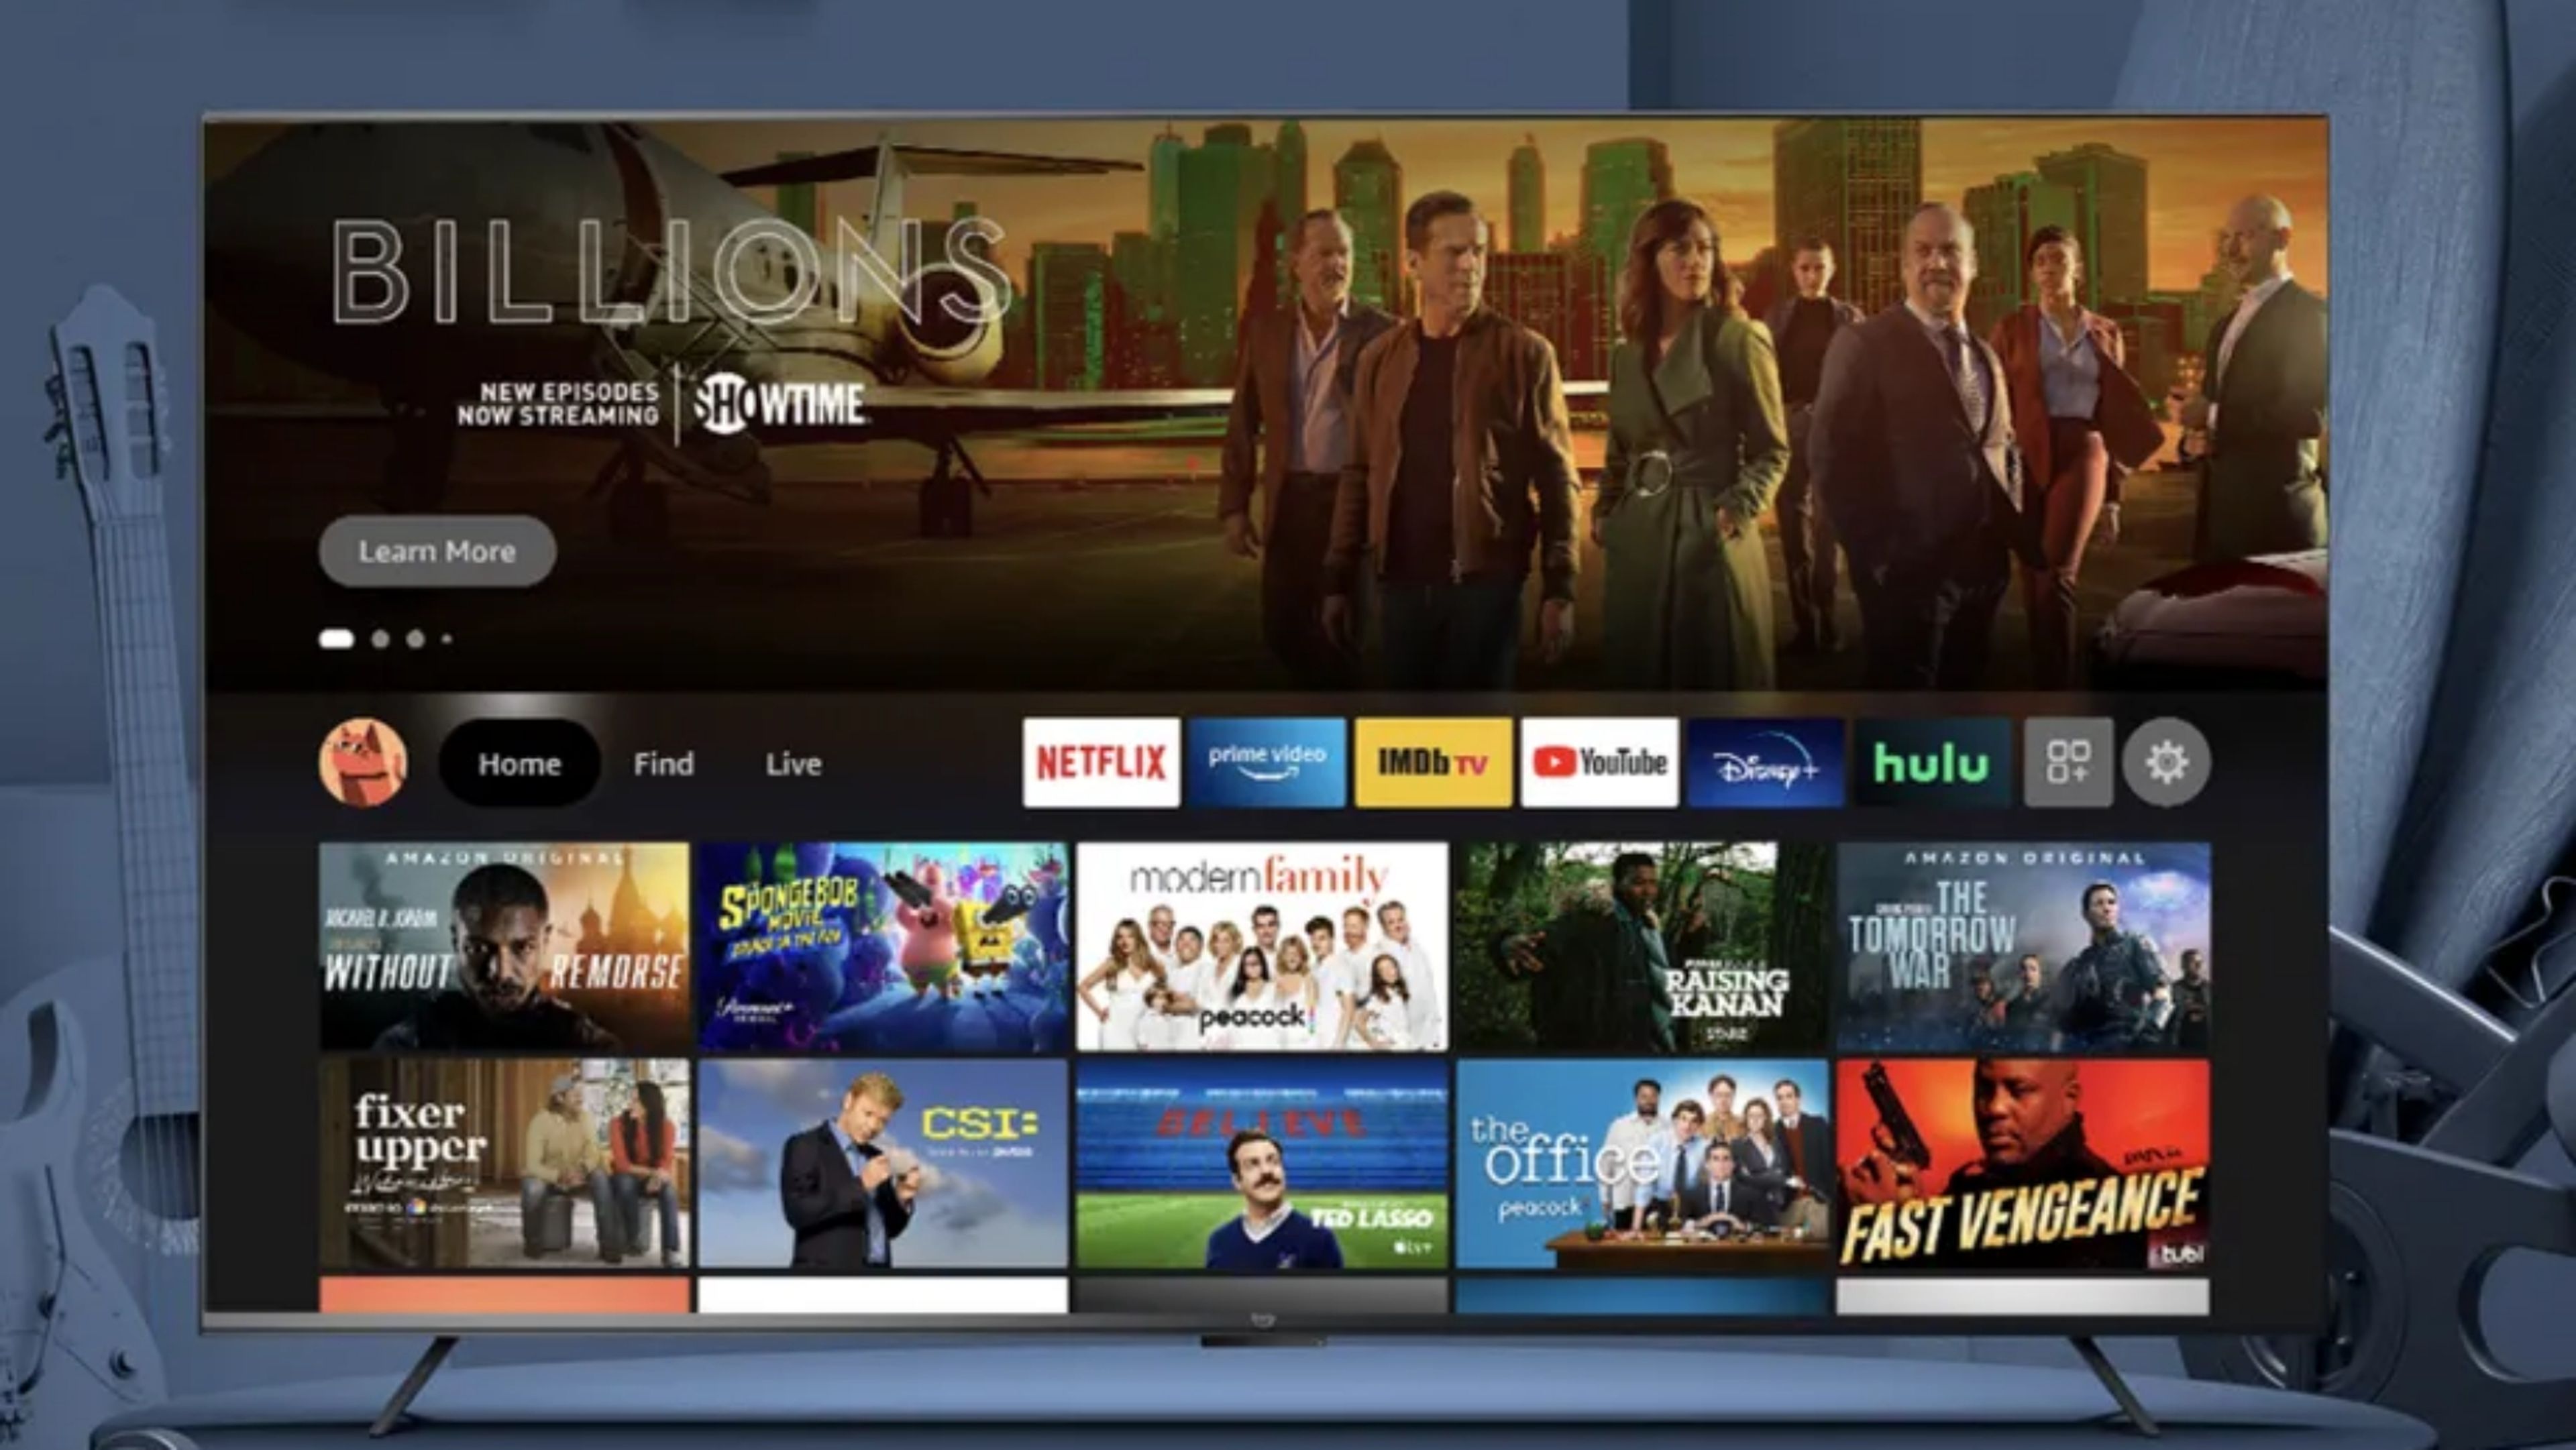 Amazon salta al terrero de los televisores con Fire TV Omni, sus nuevas teles 4K y ecosistema Amazon